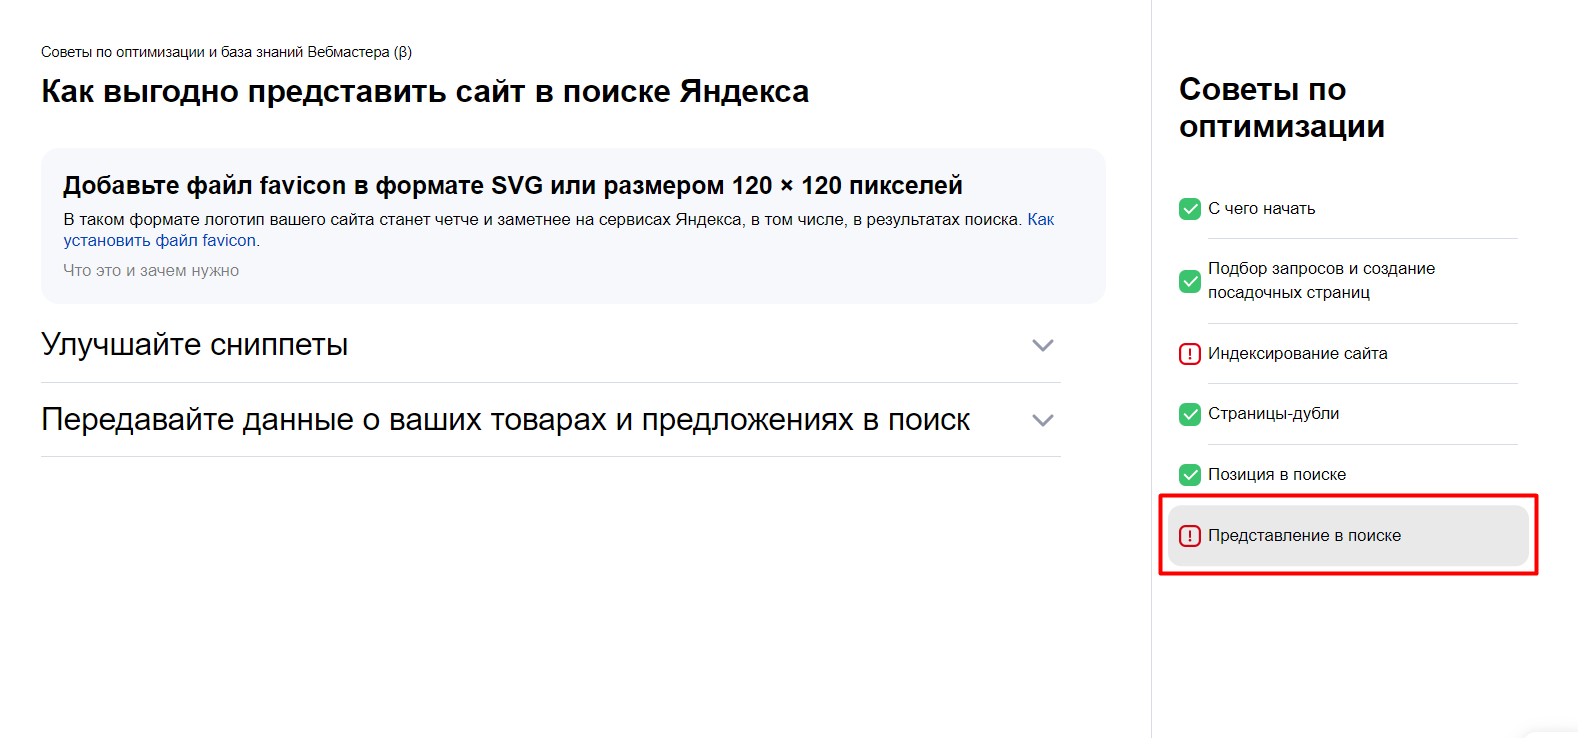 Яндекс Вебмастер